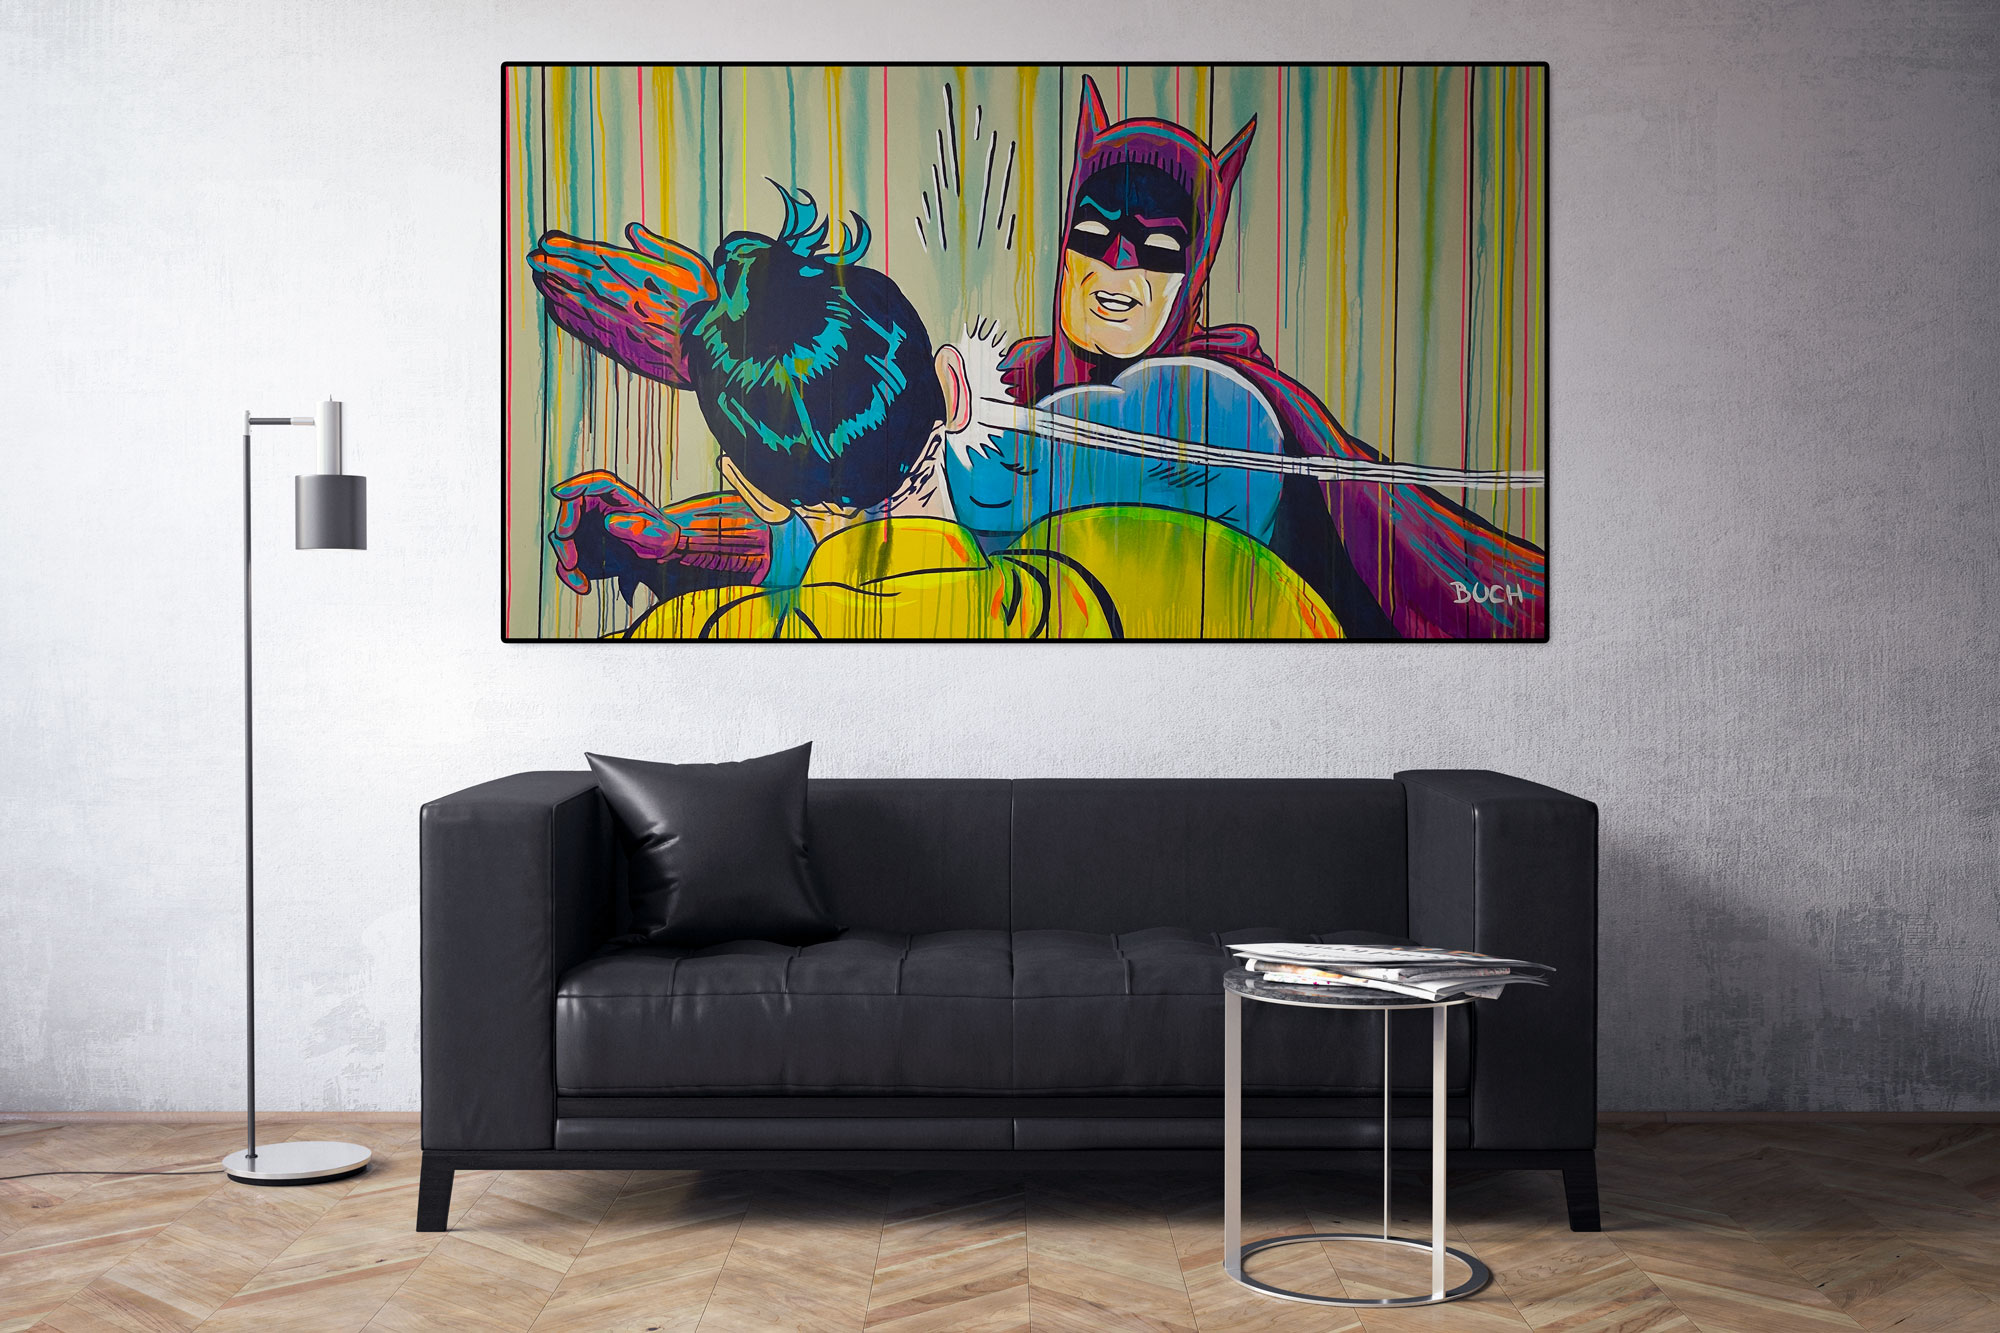 Original popart maleri af Batman som slår Robin med løbende maling, malet af kunstner Allan Buch Maleri til salg